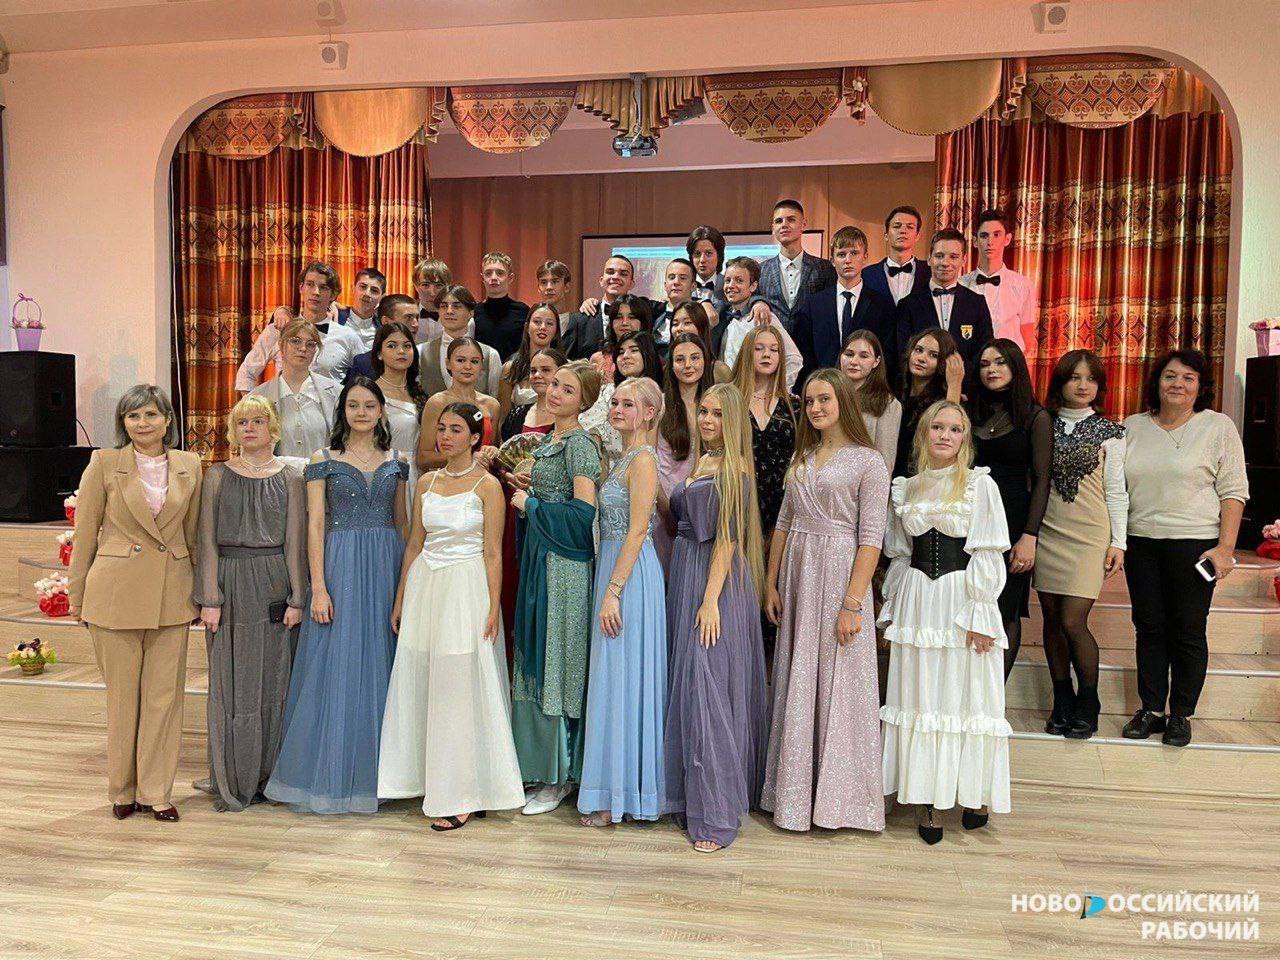 В Новороссийске старшеклассники танцевали на балу как Наташа Ростова и Андрей Болконский